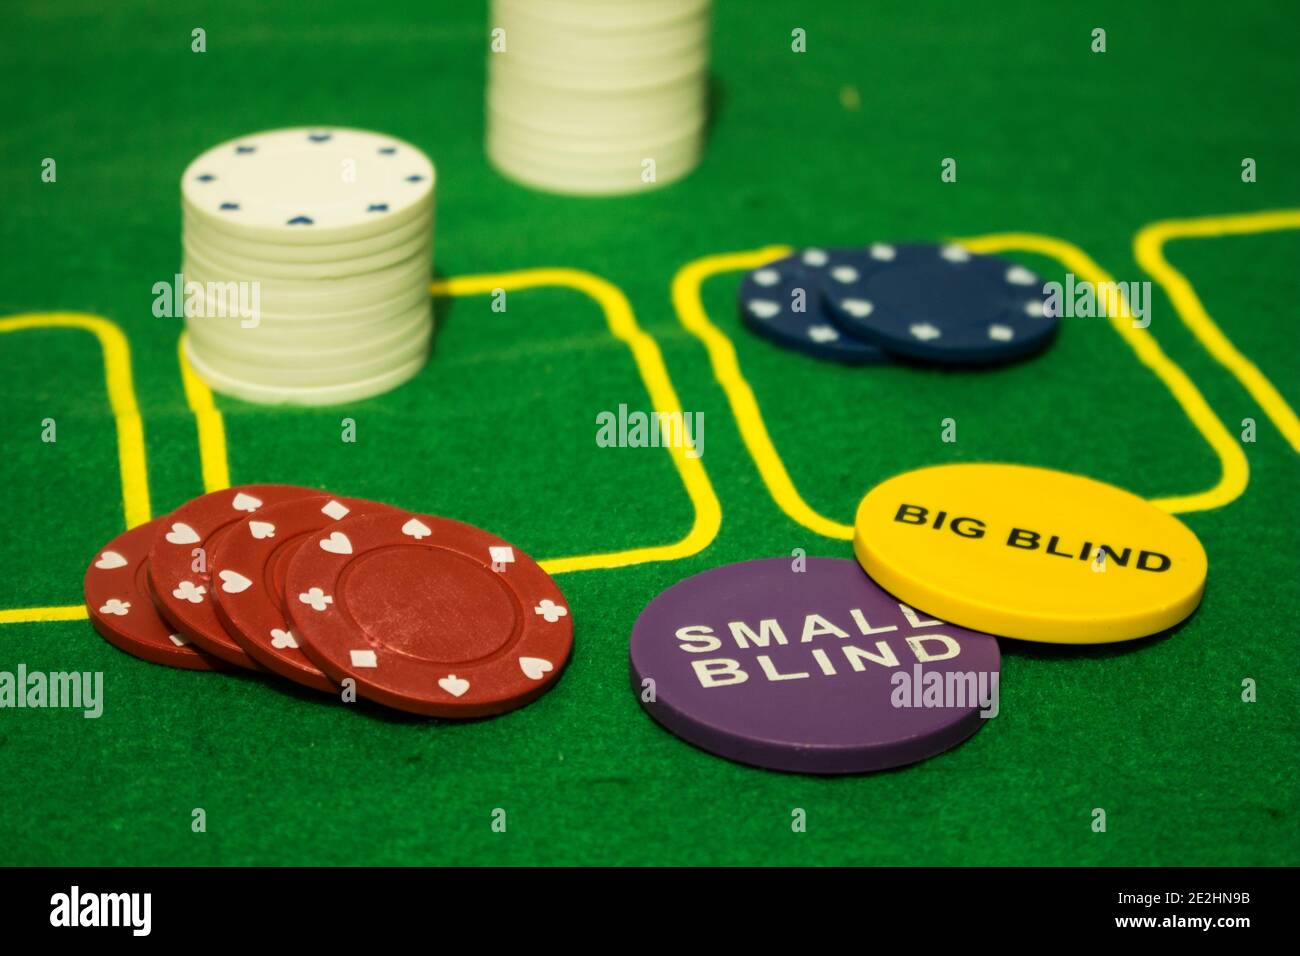 Diversas fichas coloridas para juegos de carding y jugar con dos Las medallas se sorprendieron con 'Ciegos pequeños' y 'Ciegos grandes' útiles para Texas Hold'em tipo de póquer Foto de stock